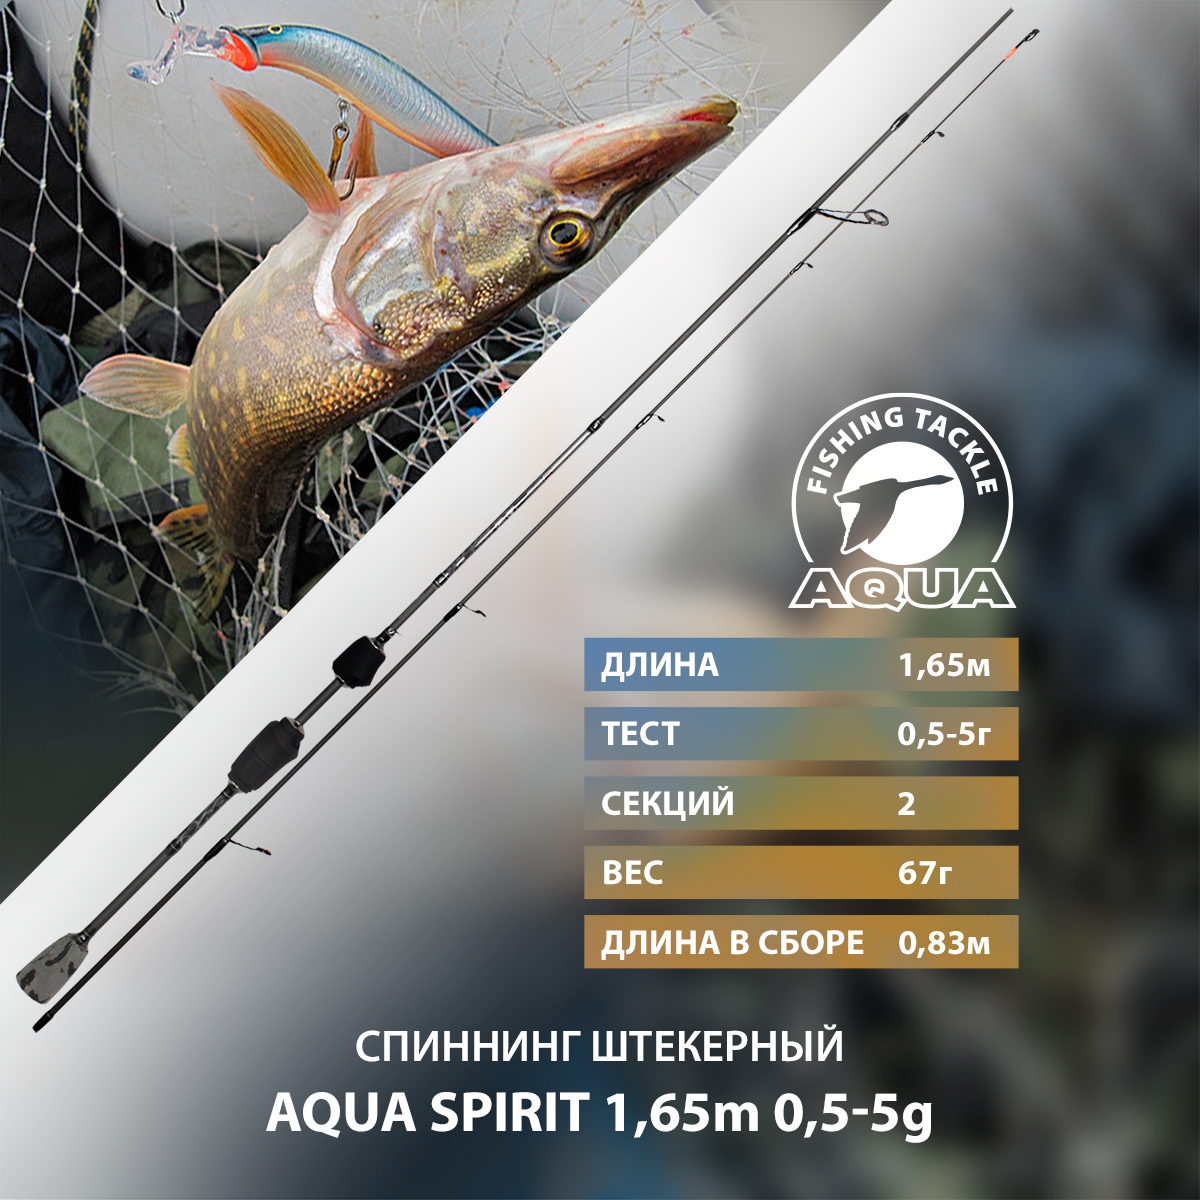 Спиннинг штекерный AQUA SPIRIT 1,65m 0,5-5g